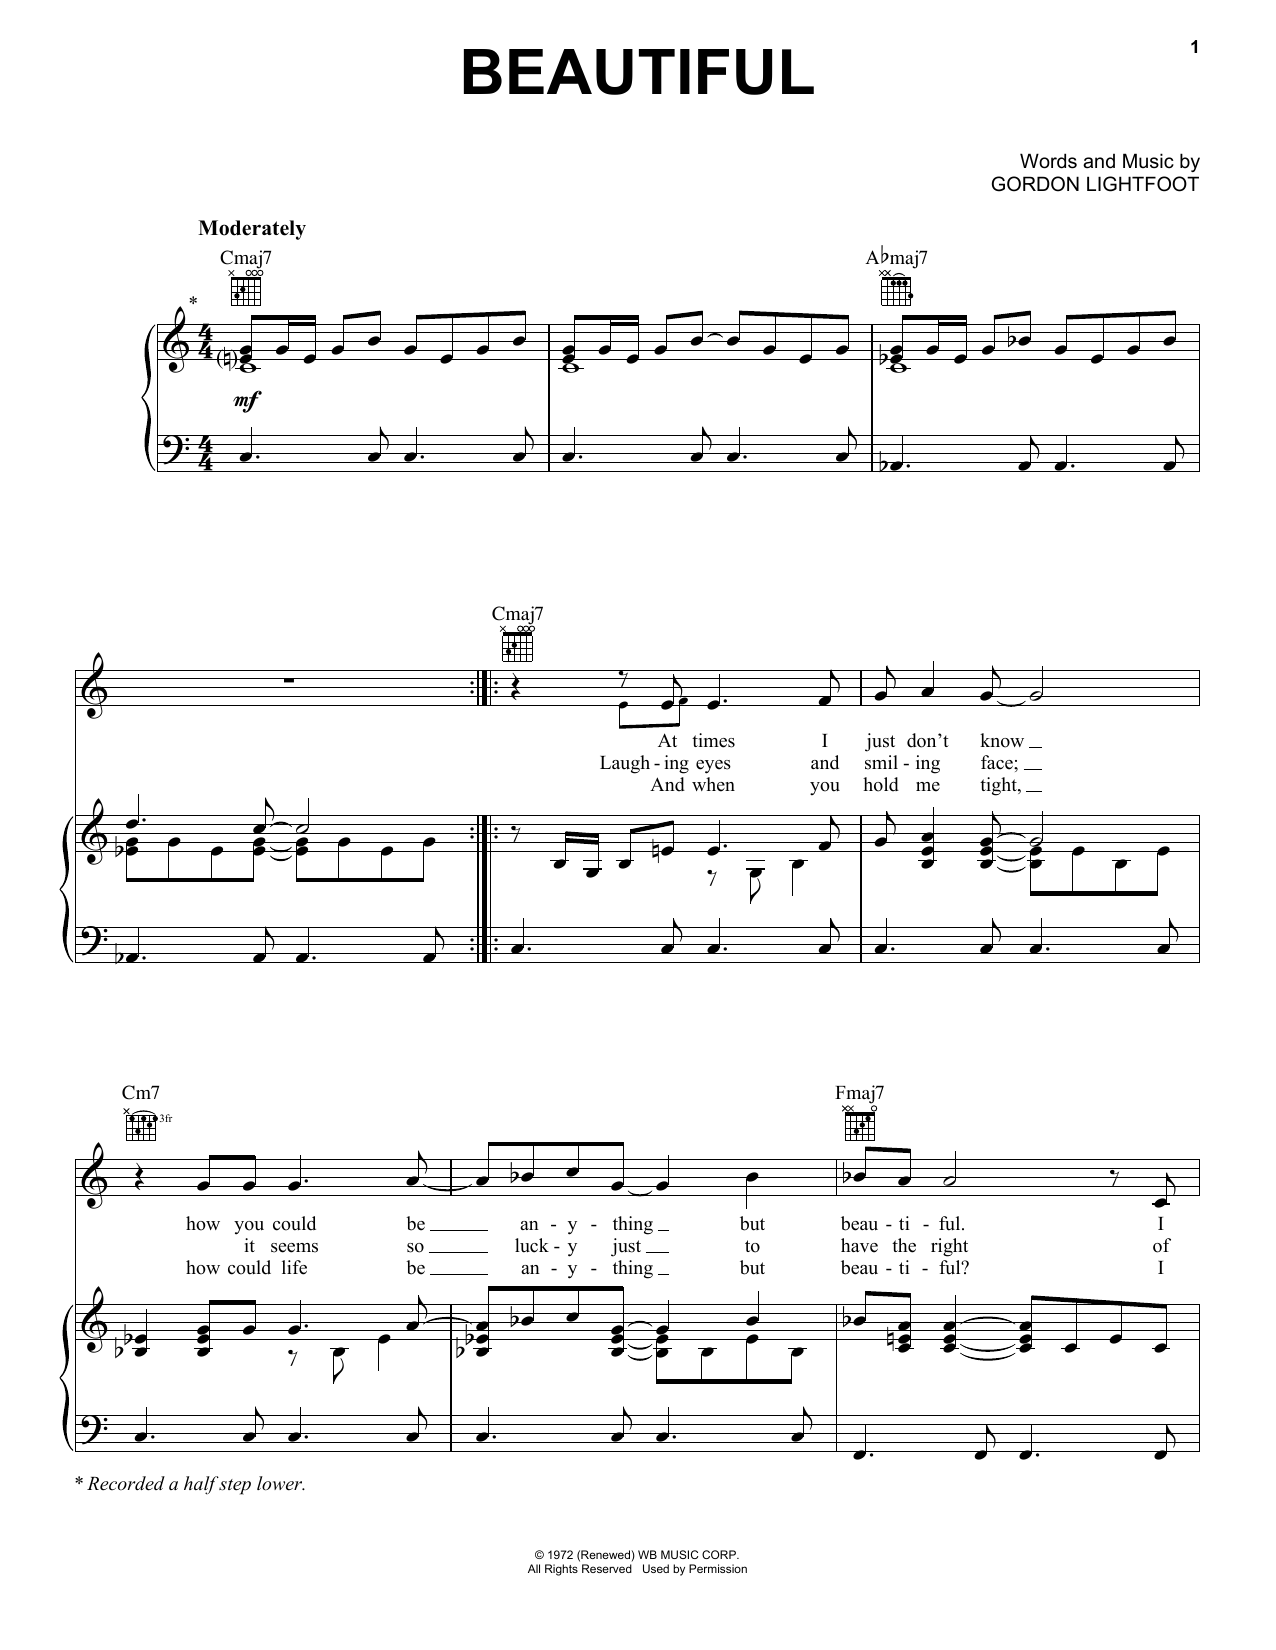 Gordon Lightfoot Beautiful Sheet Music Notes & Chords for Lyrics & Chords - Download or Print PDF